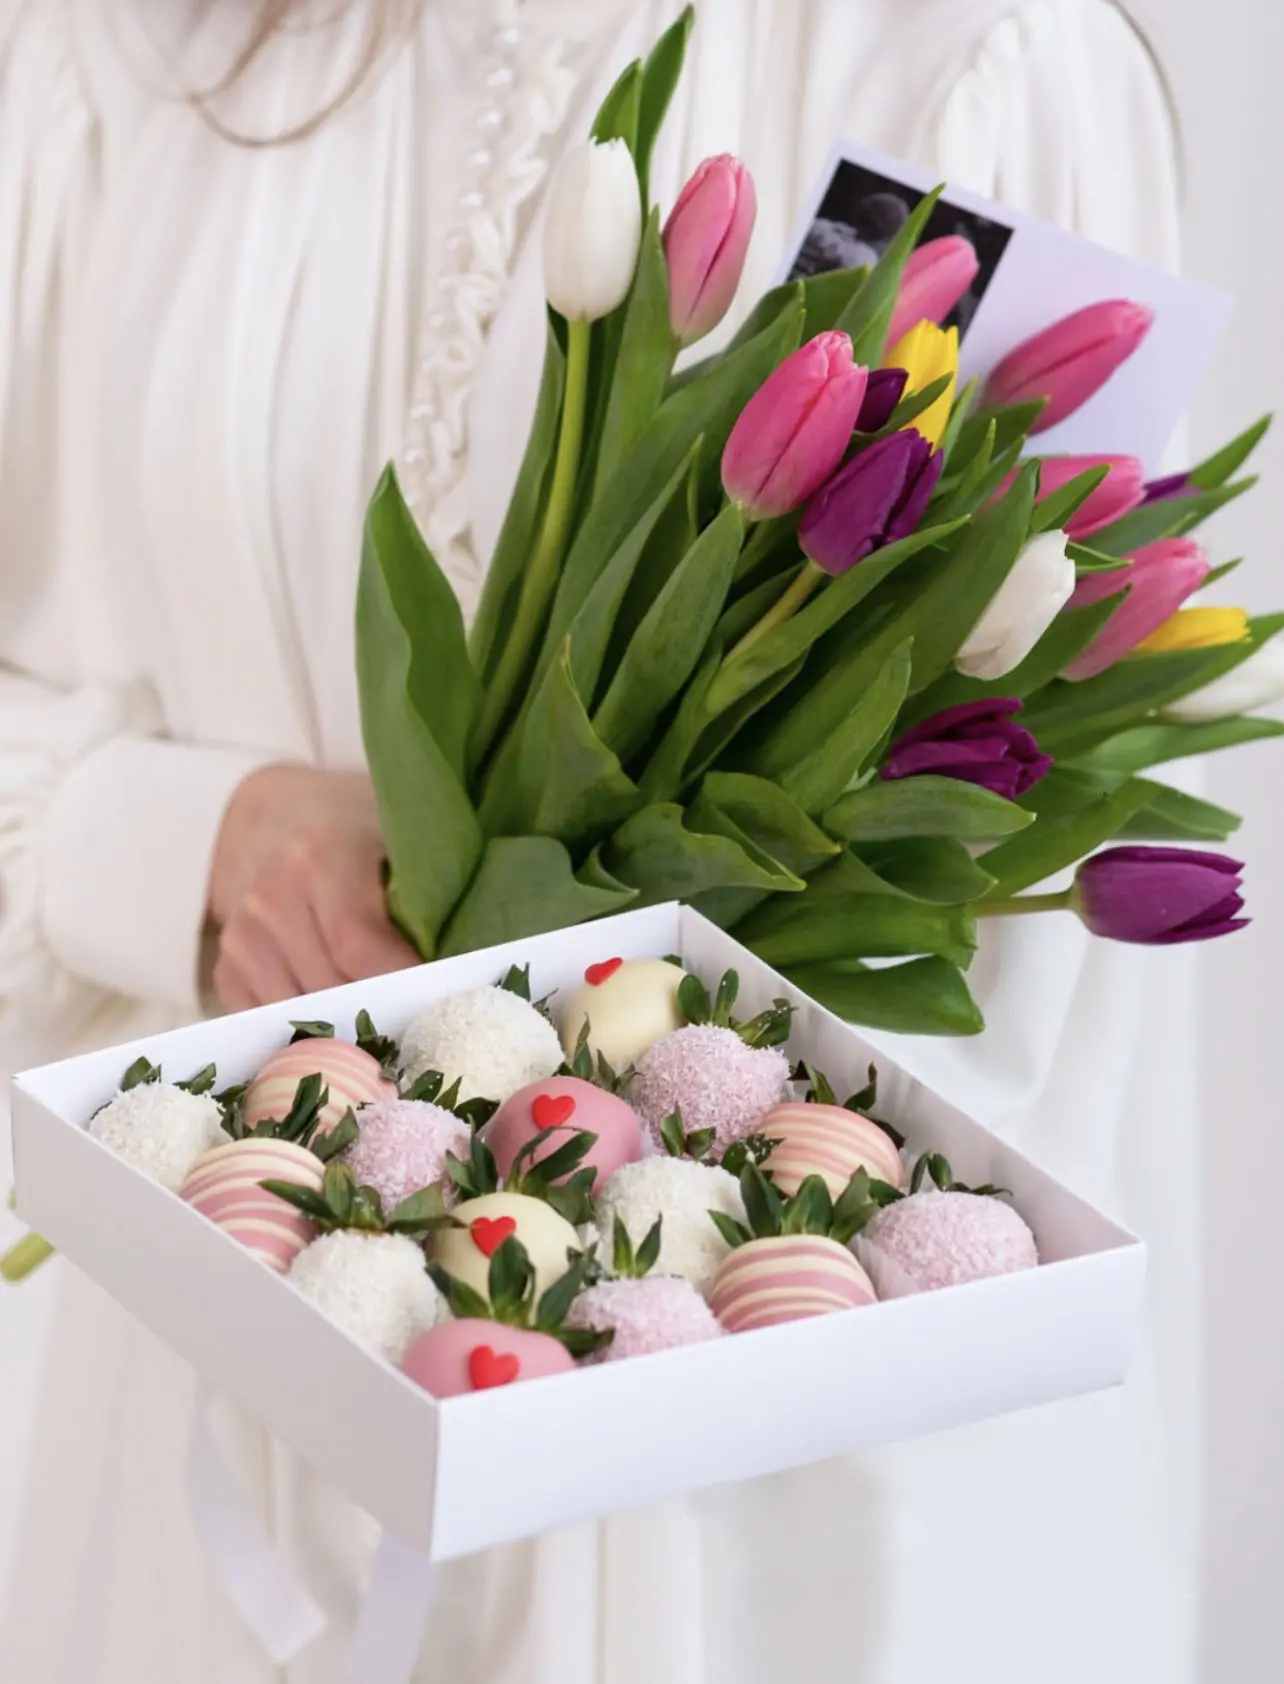 Клубника в шоколаде "Дуо набор с тюльпанами"4 500 руб.